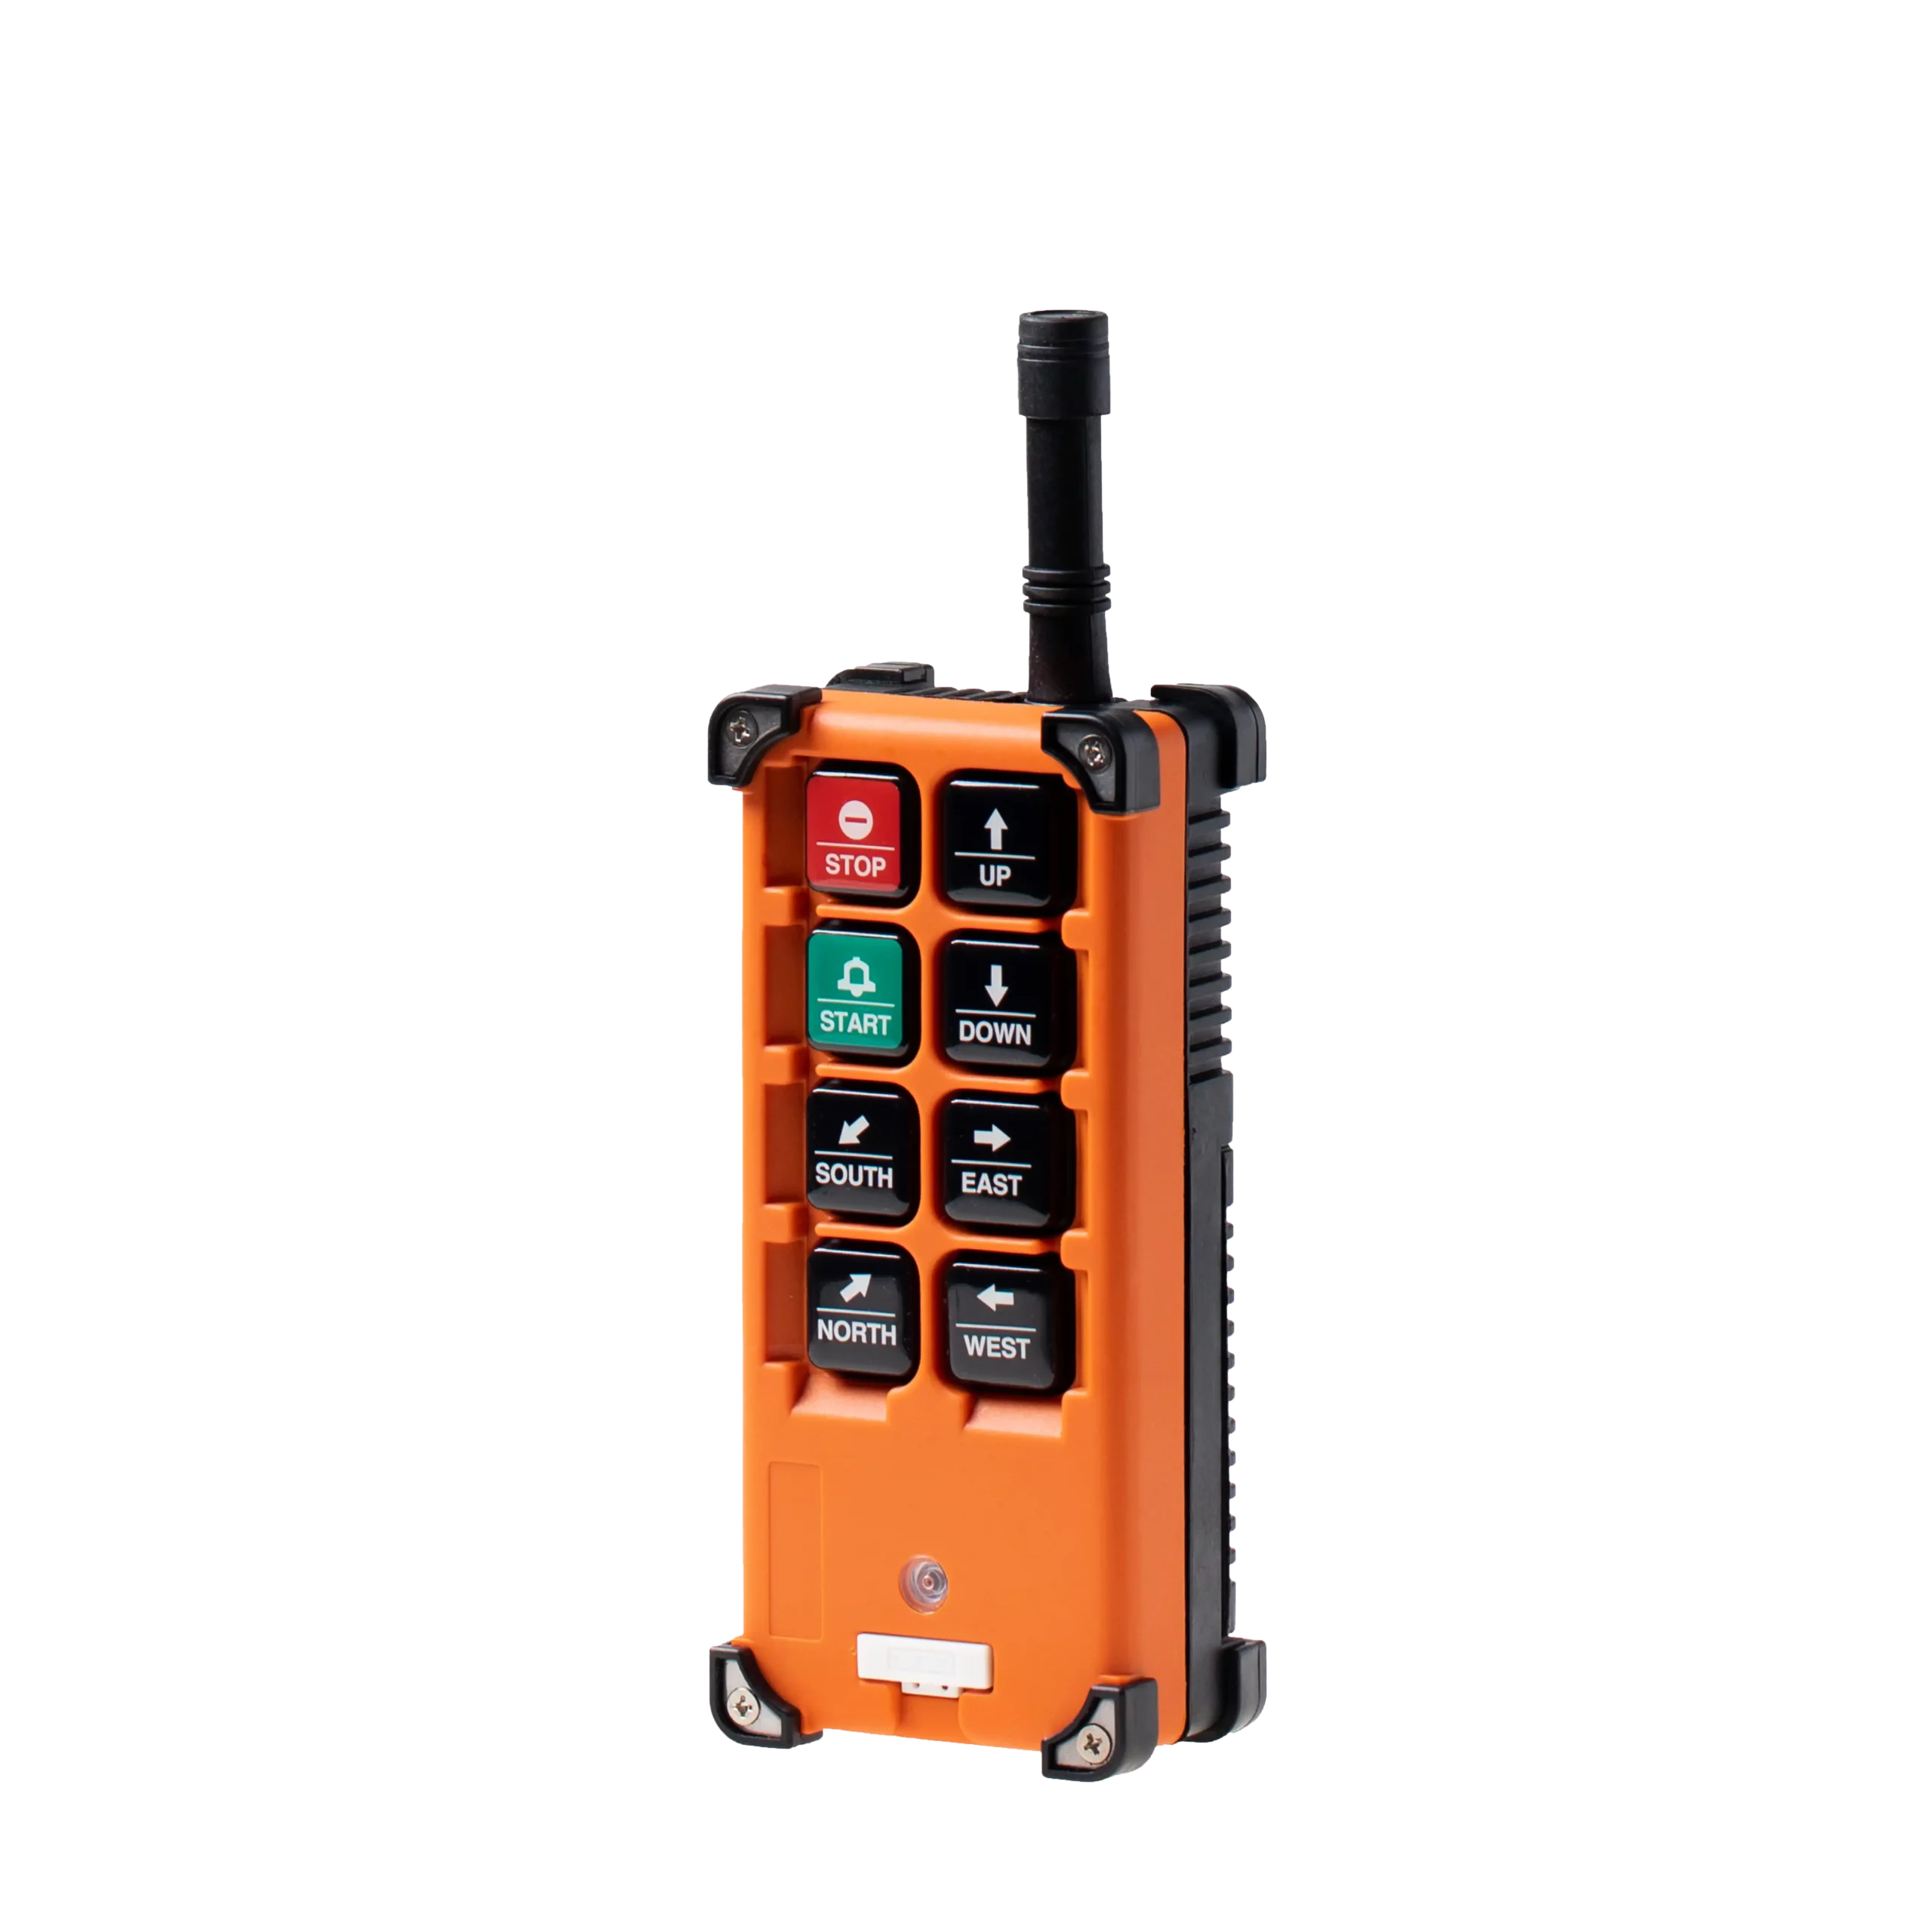 Telecrane F21-E1B Industrial radio remote control